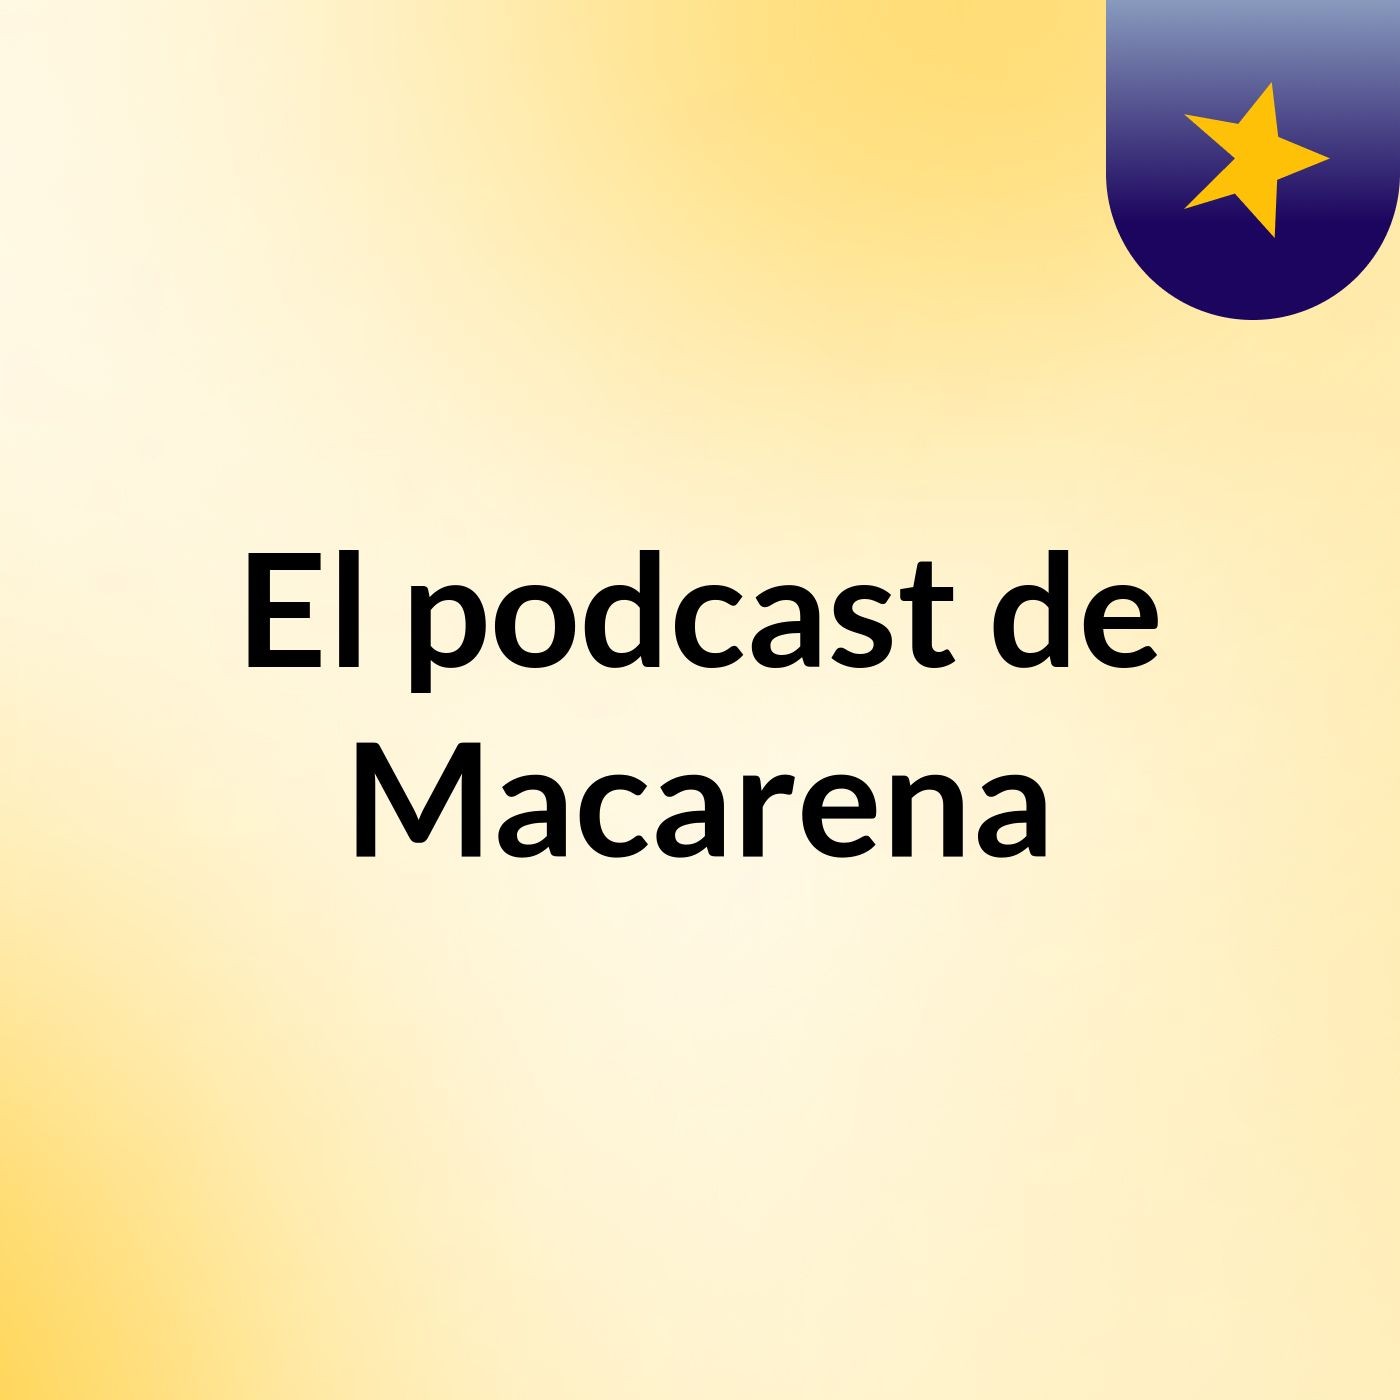 El podcast de Macarena